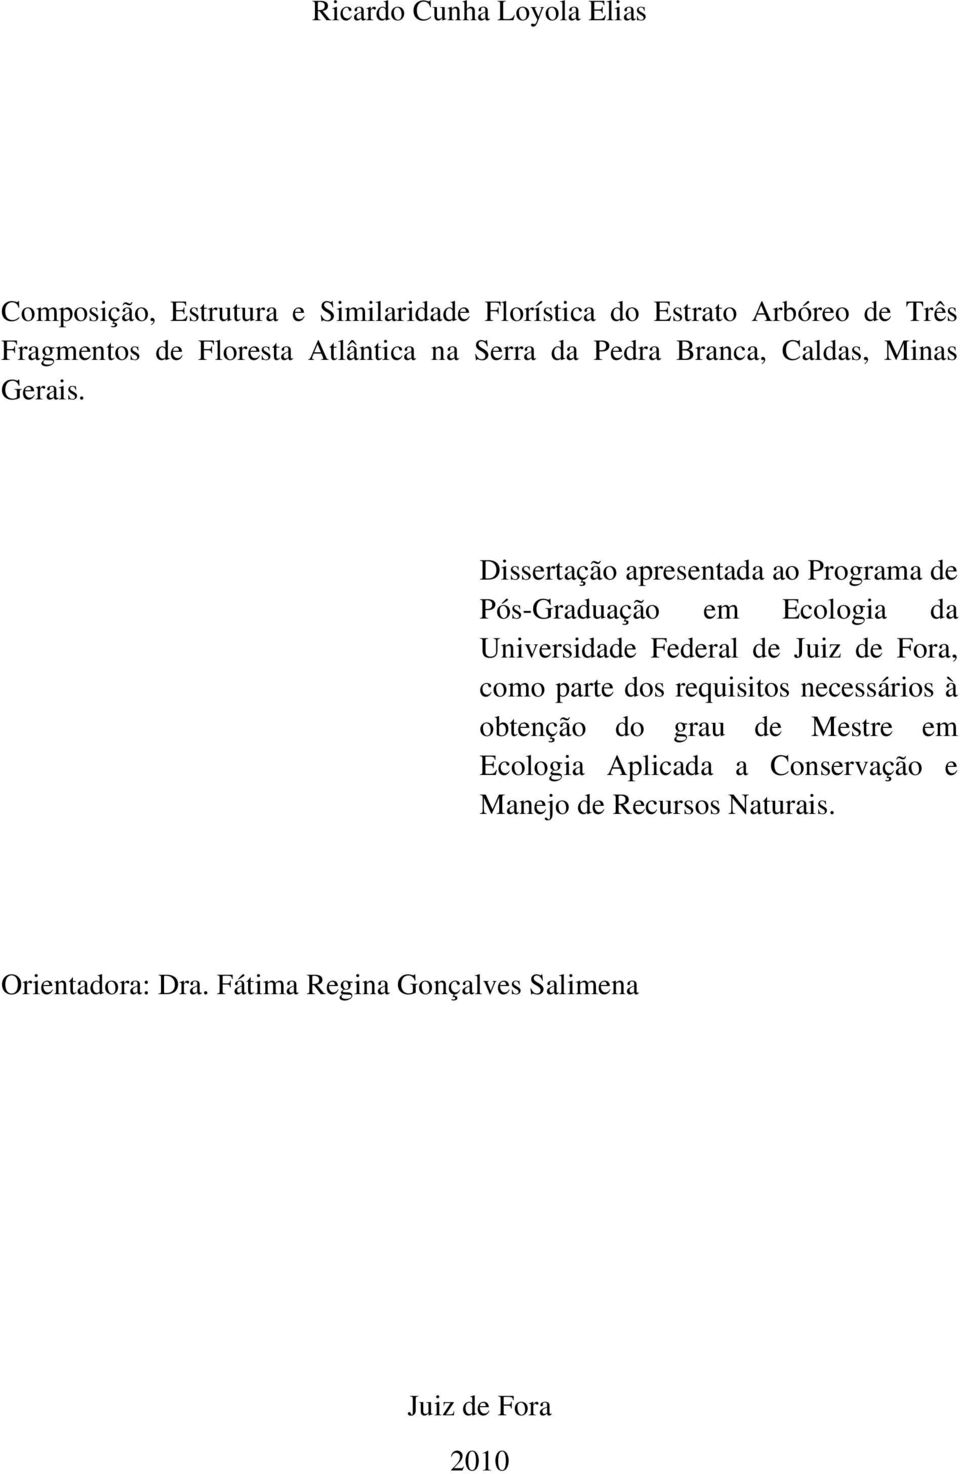 Dissertação apresentada ao Programa de Pós-Graduação em Ecologia da Universidade Federal de Juiz de Fora, como parte dos